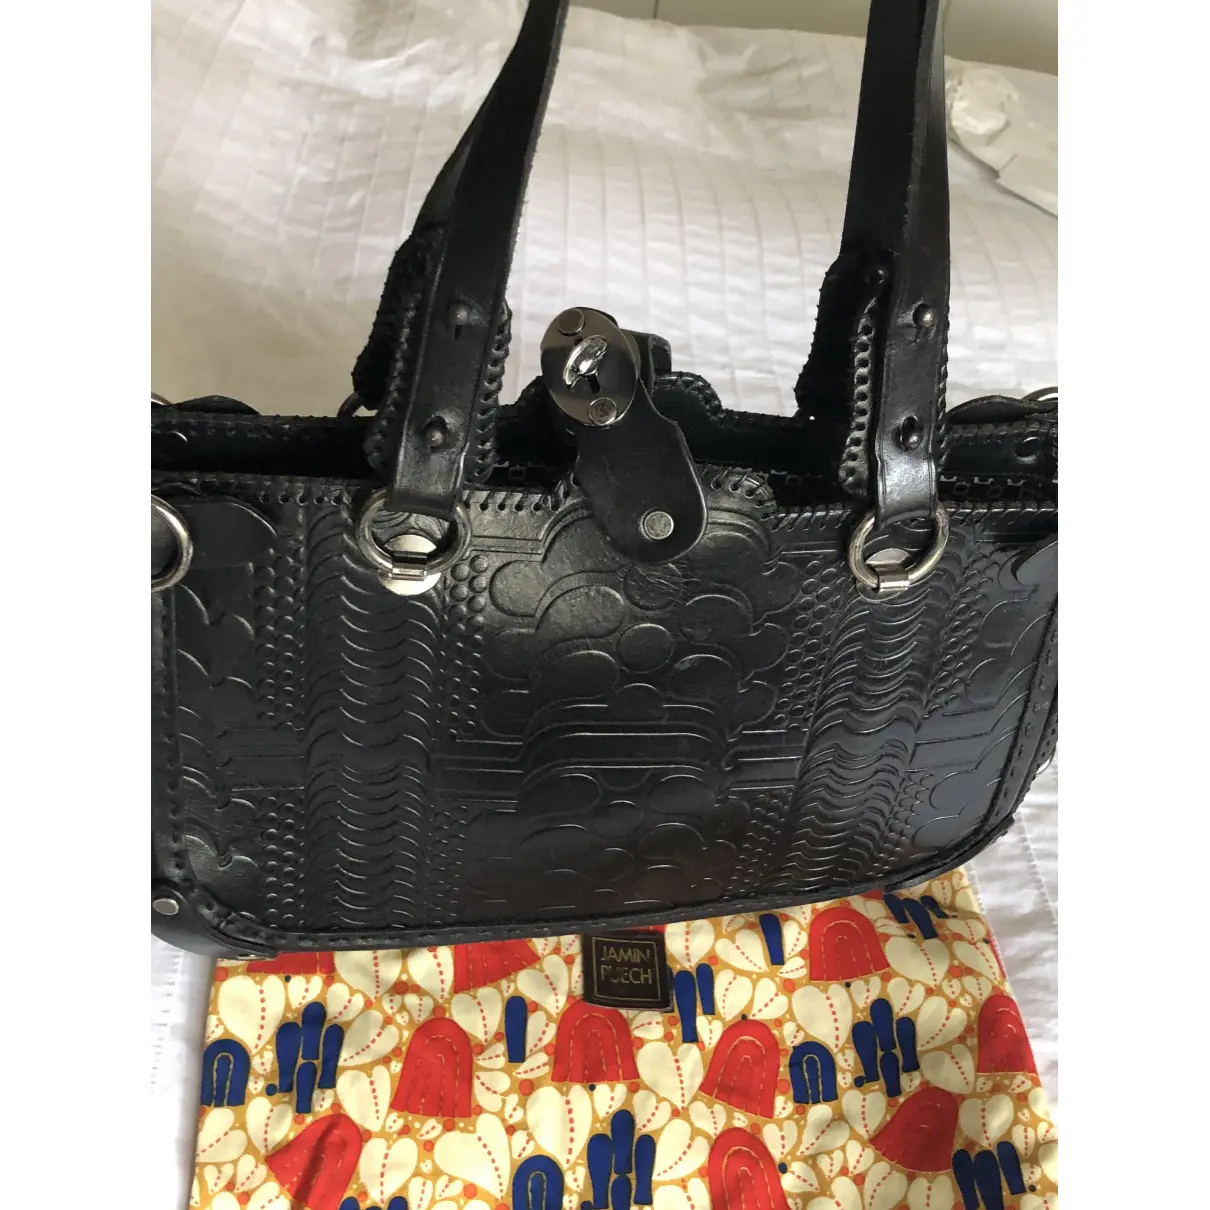 Buy Jamin Puech Leather handbag online